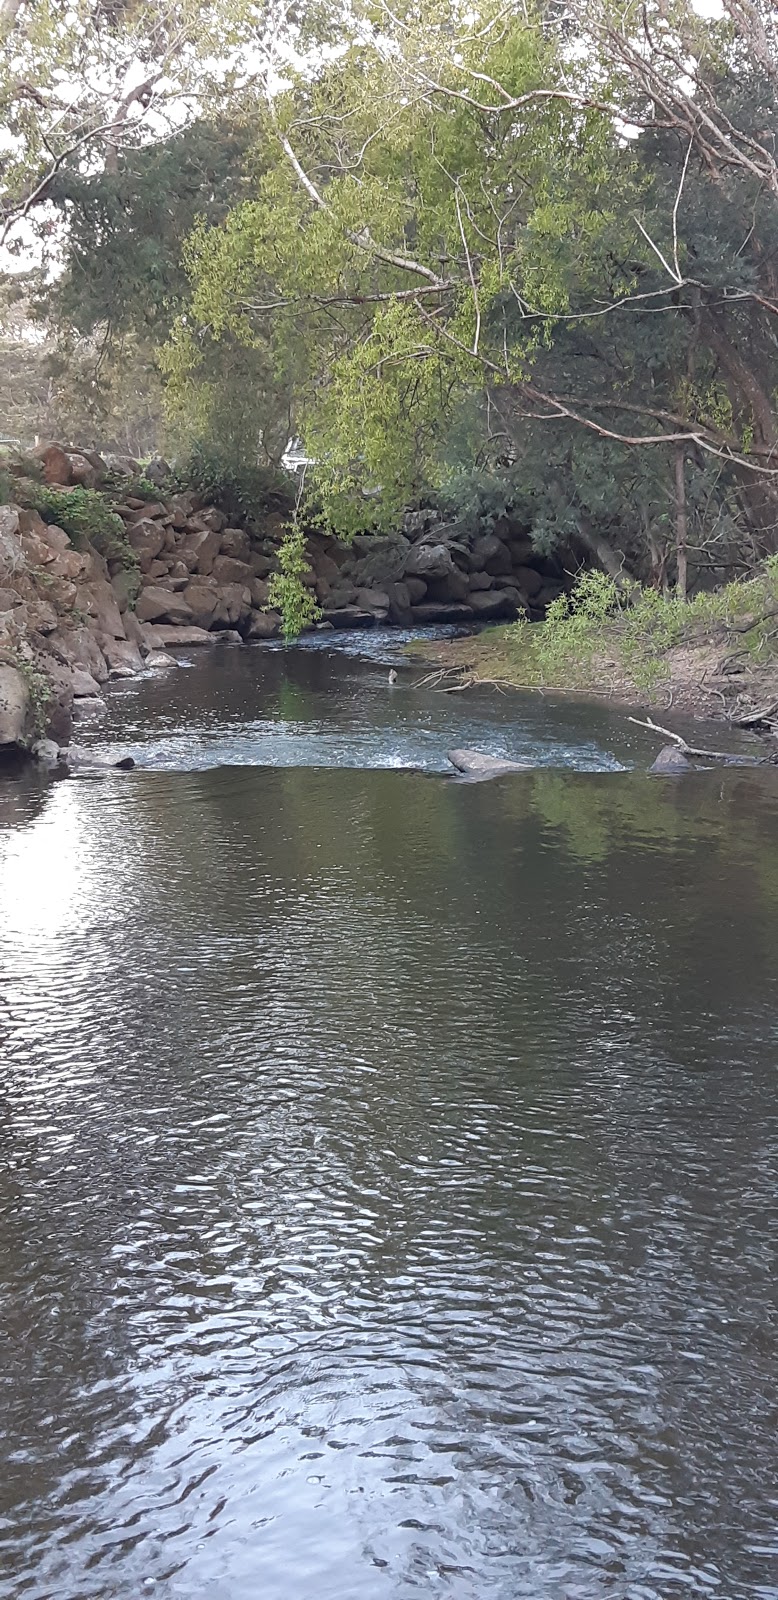 Bracknell River Reserve | Bracknell Reserve Rd, Bracknell TAS 7302, Australia